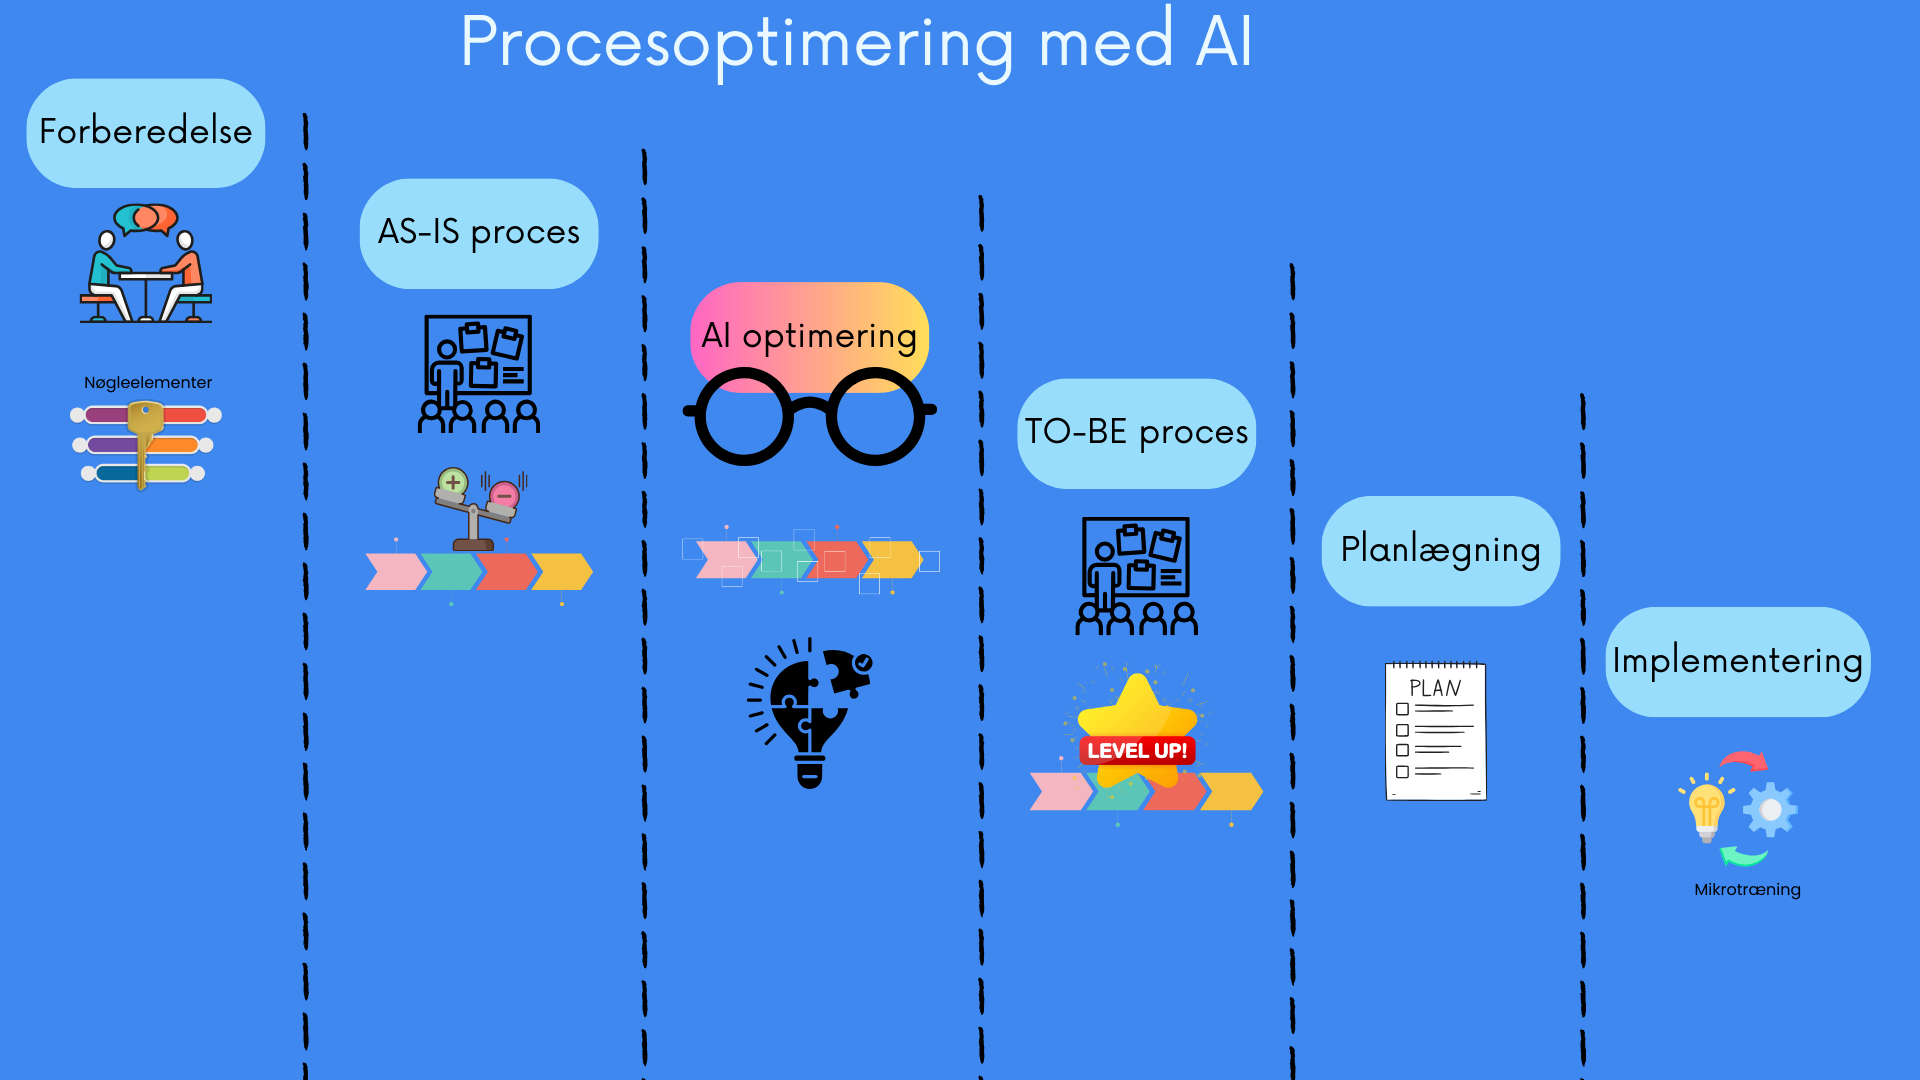 Procesoptimering med AI